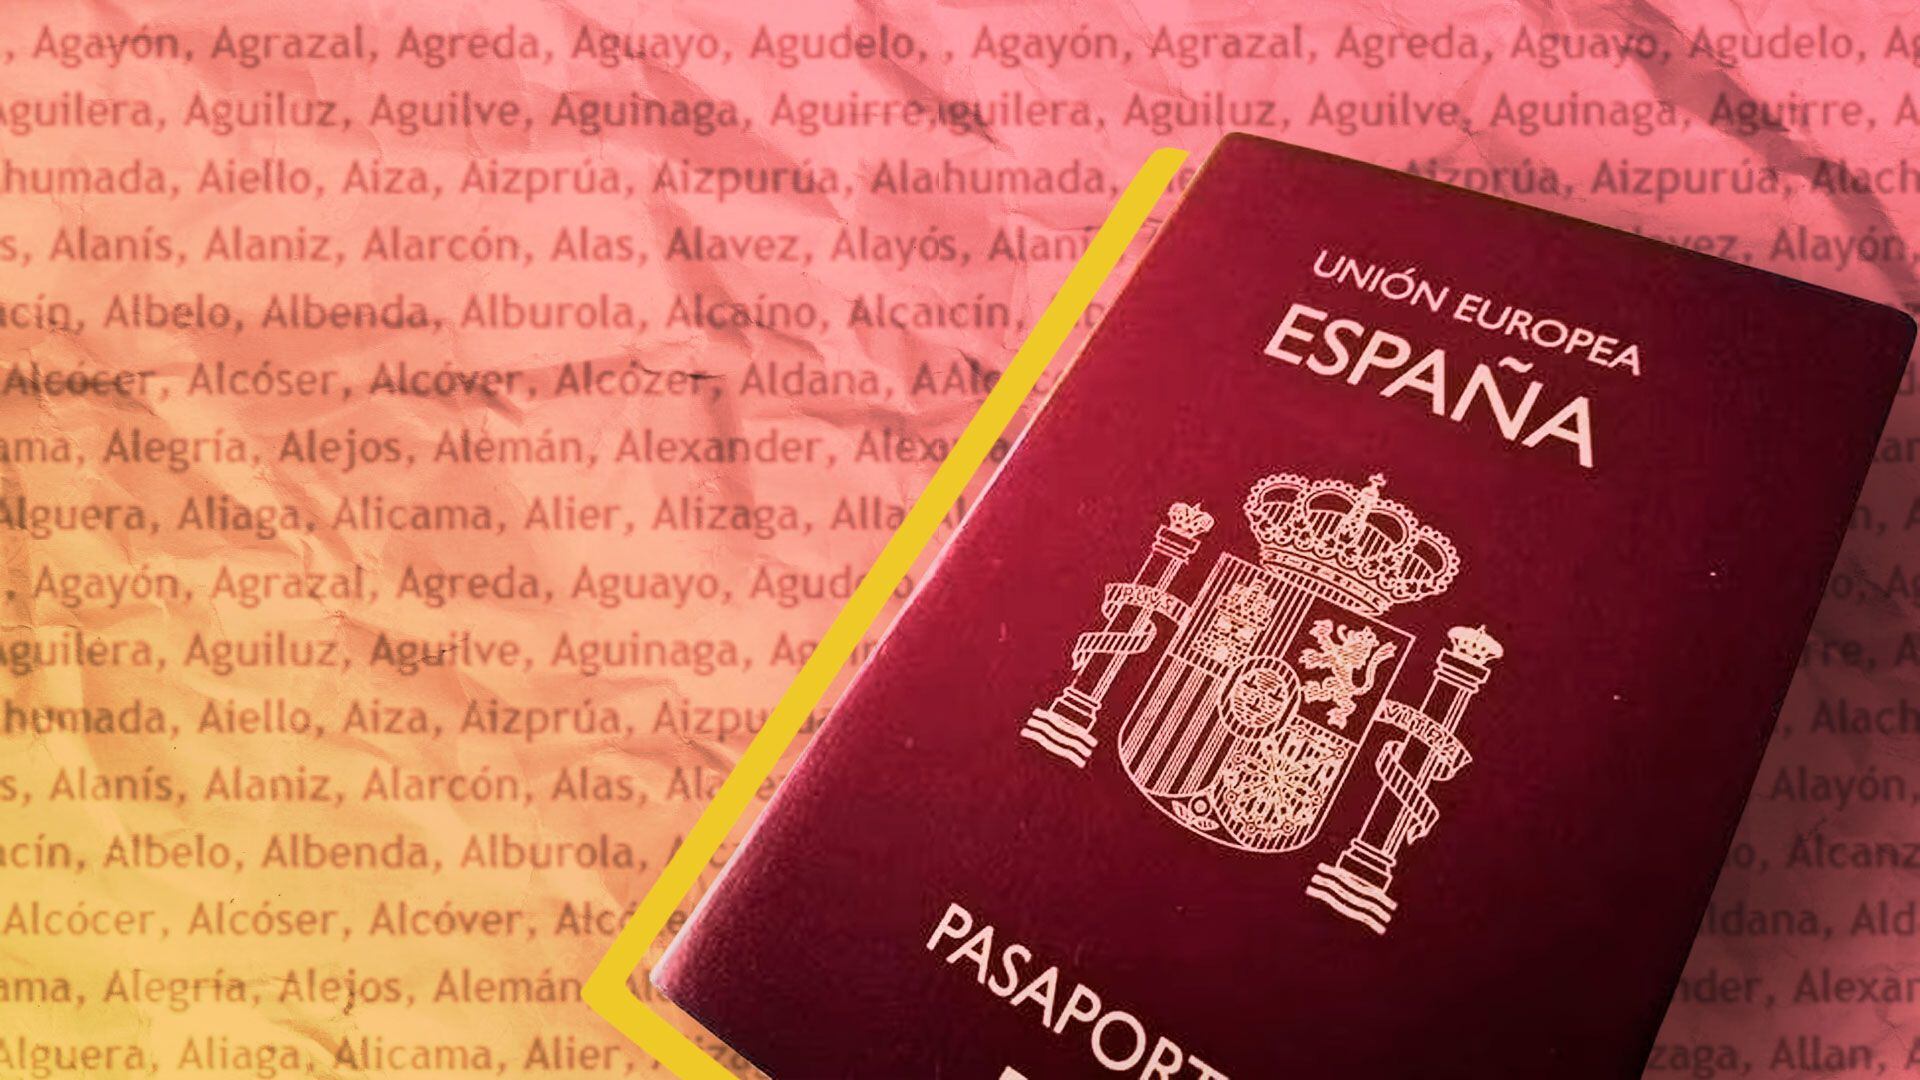 Anunciaron 6.020 nuevos turnos para trámites en el Consulado de España en Buenos Aires